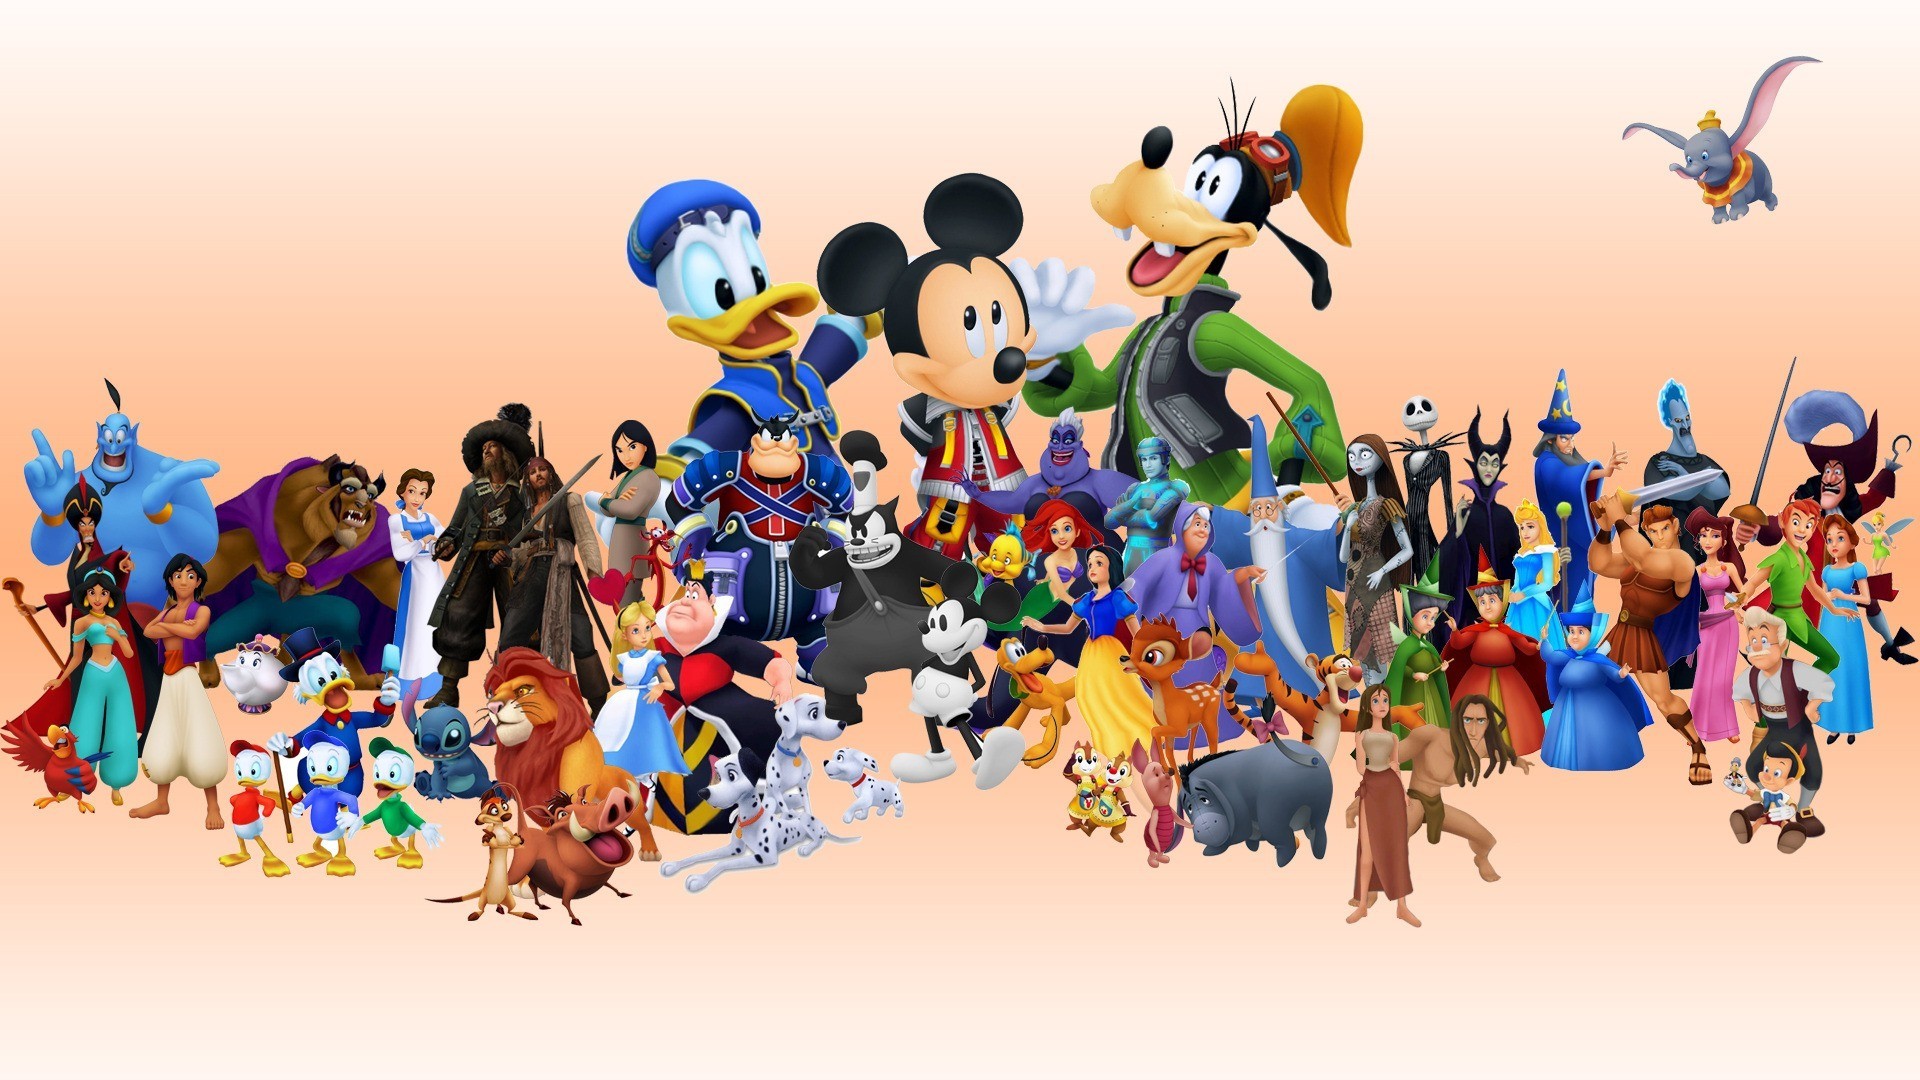 1920x1080 Kingdom Hearts 358/2 Days - Fanart - Background .